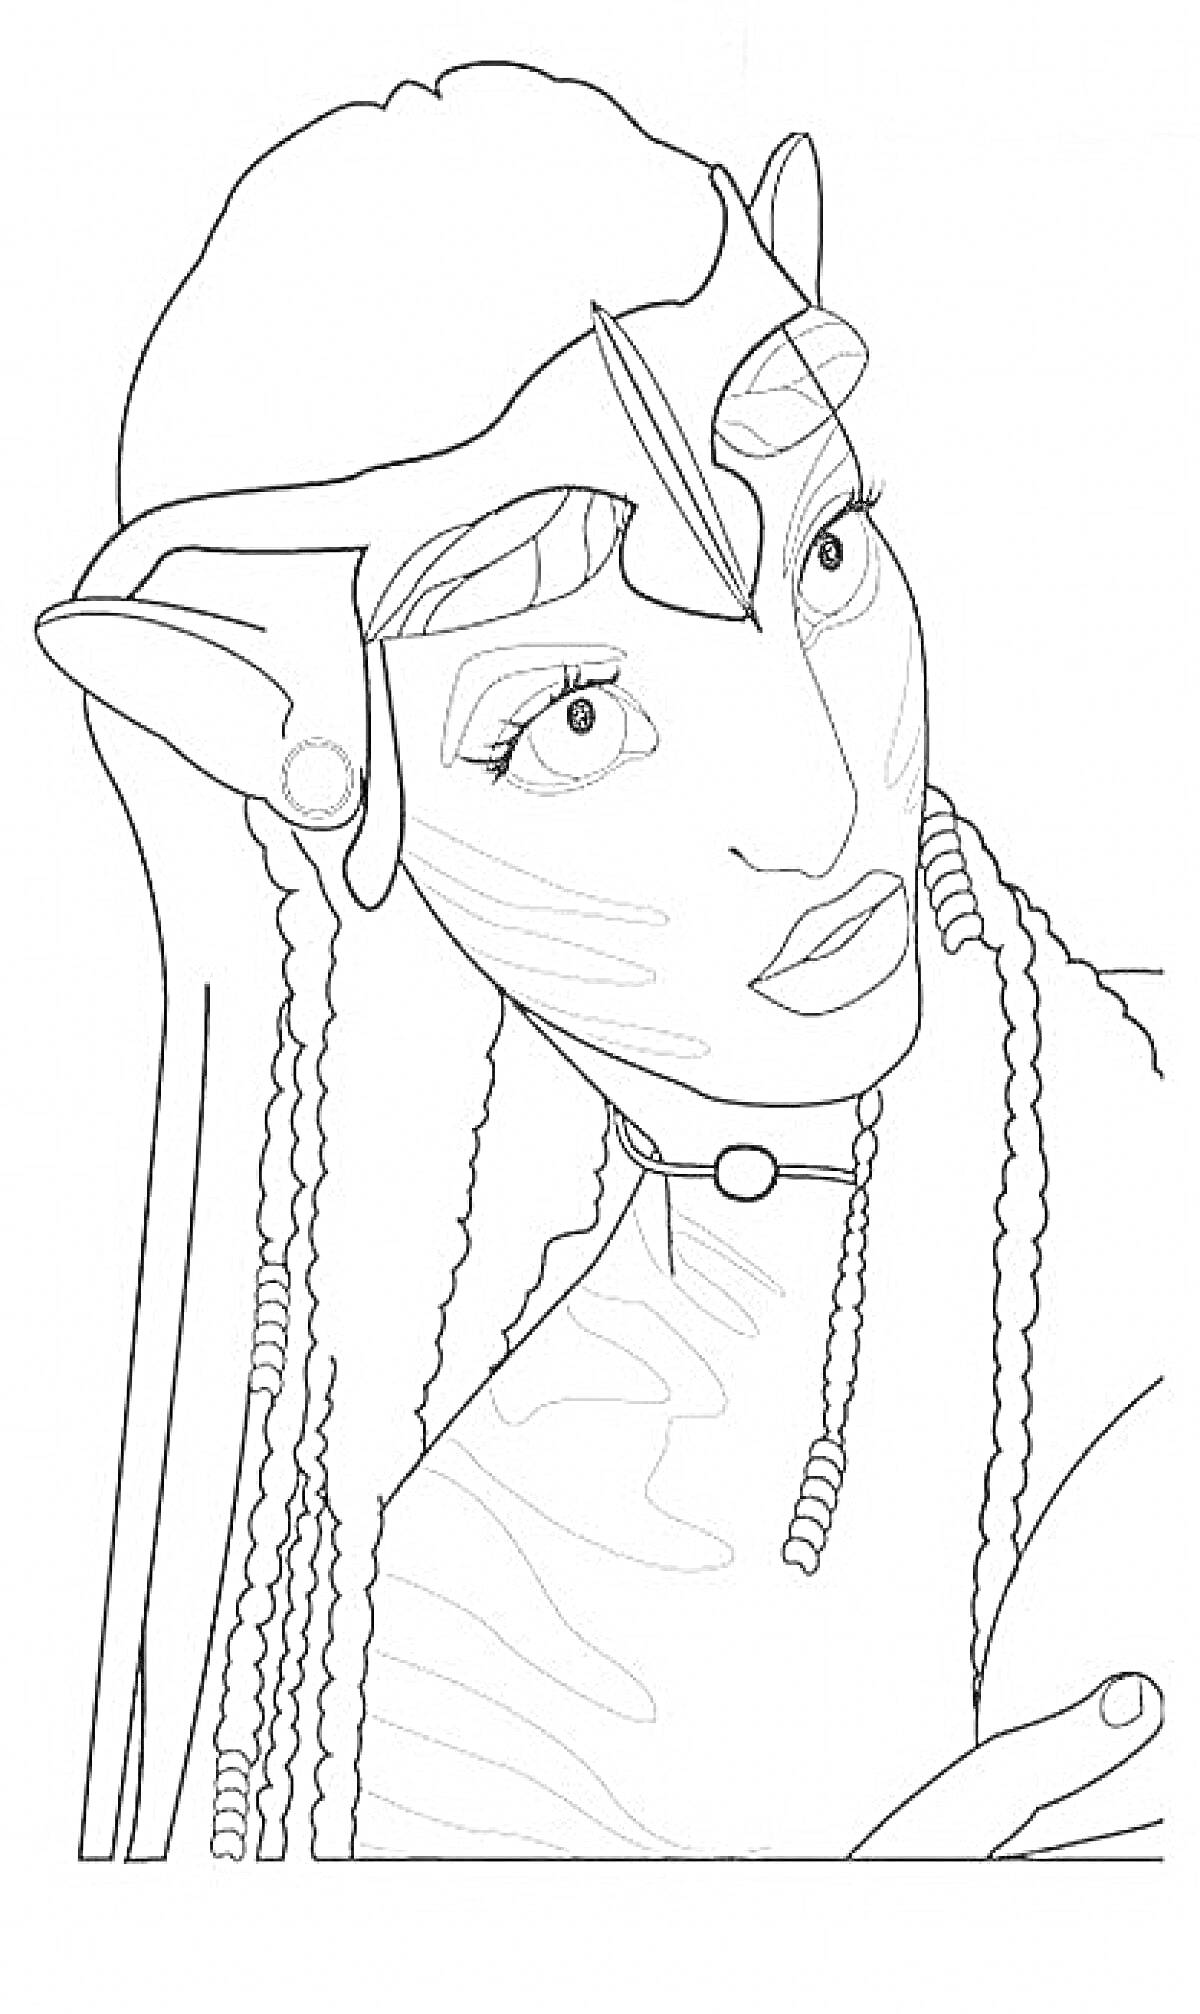 Раскраска Аватар персонаж с вытянутыми ушами, длинными волосами и украшением на голове